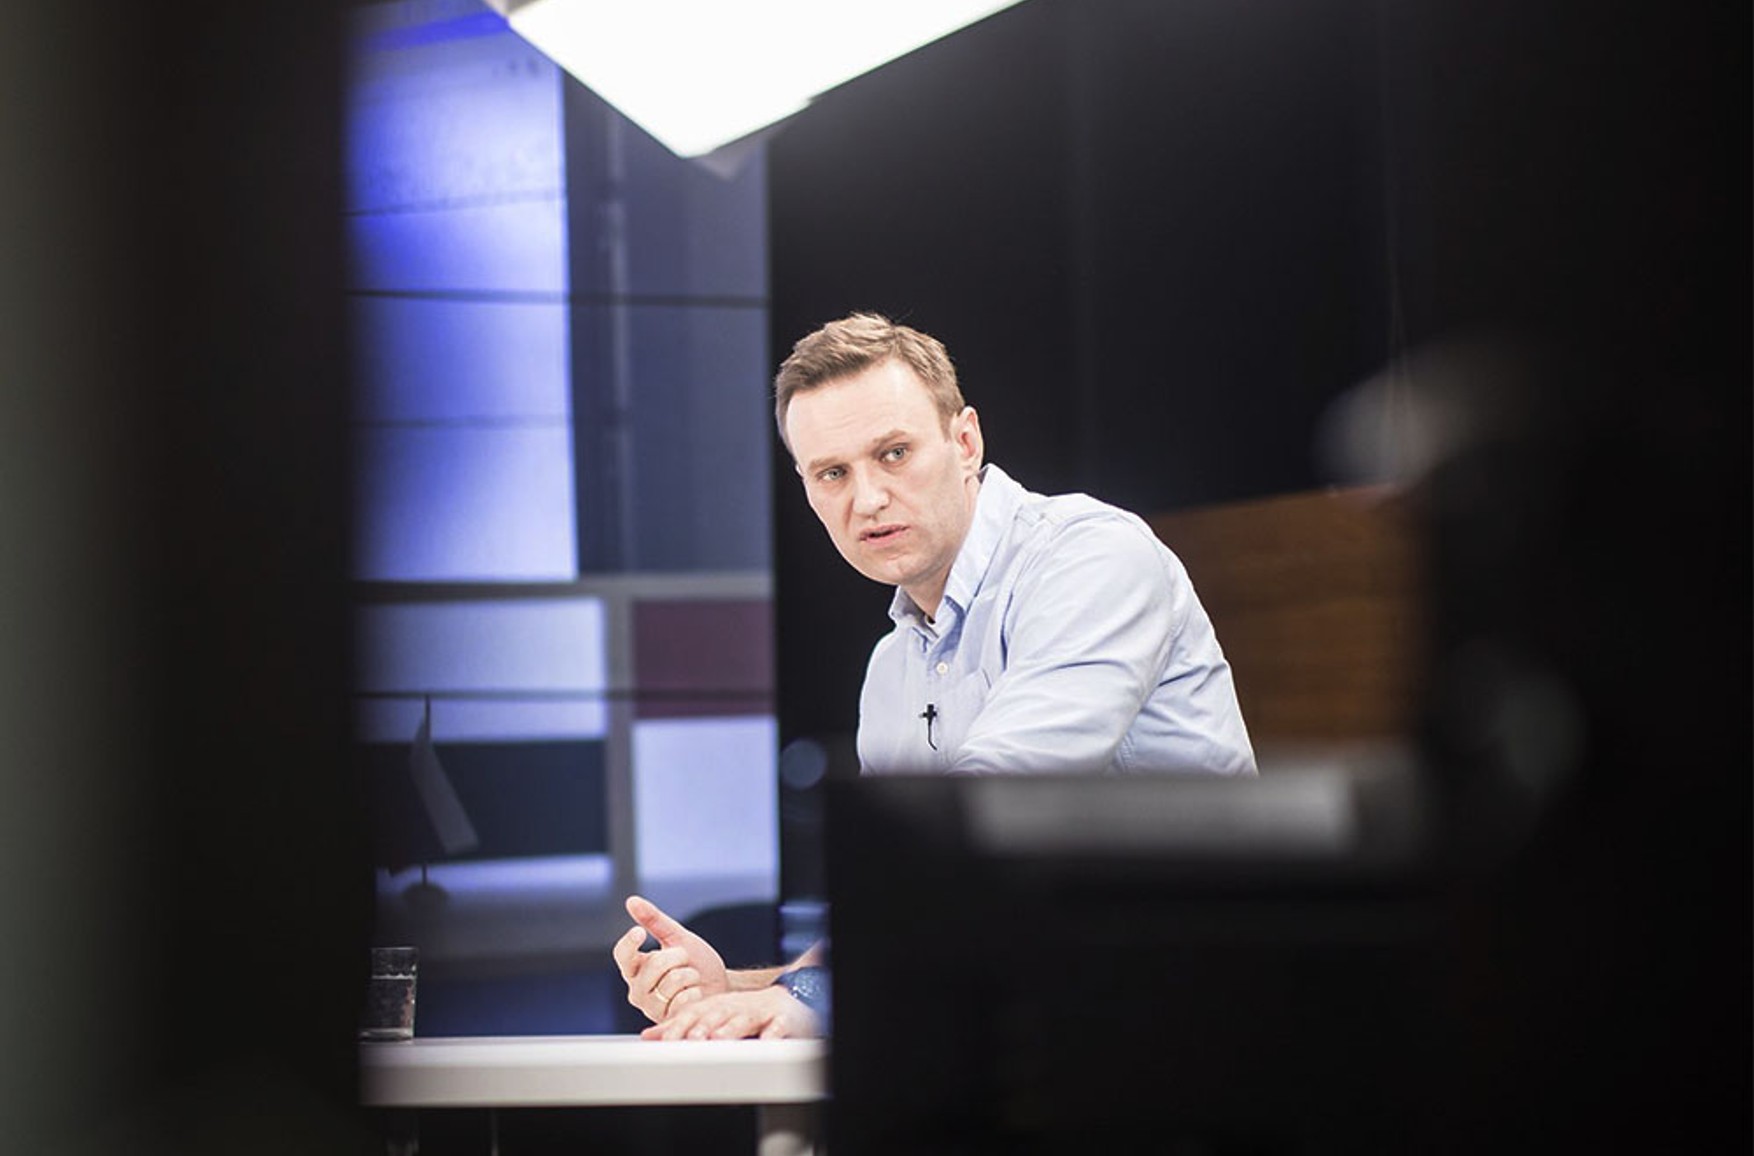 Постпреди ЄС узгодили санкції у справі про отруєння Навального проти 6 осіб